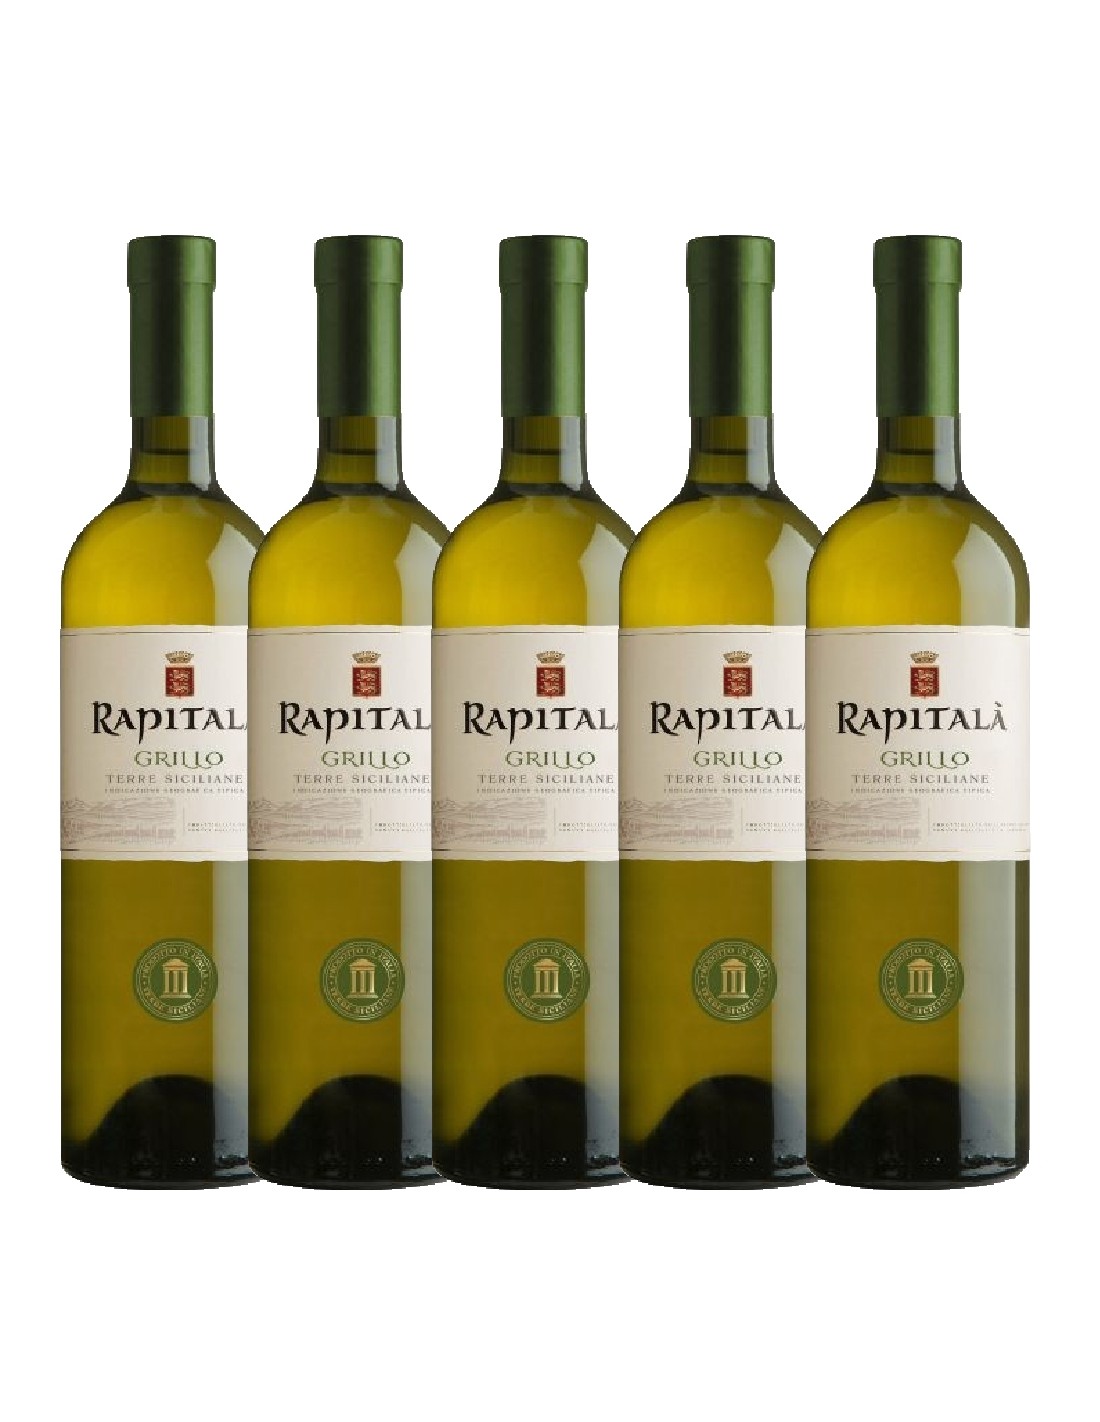 Pachet 5 sticle Vin alb, Grillo, Rapitala Sicilia, 0.75L, 13% alc., Italia